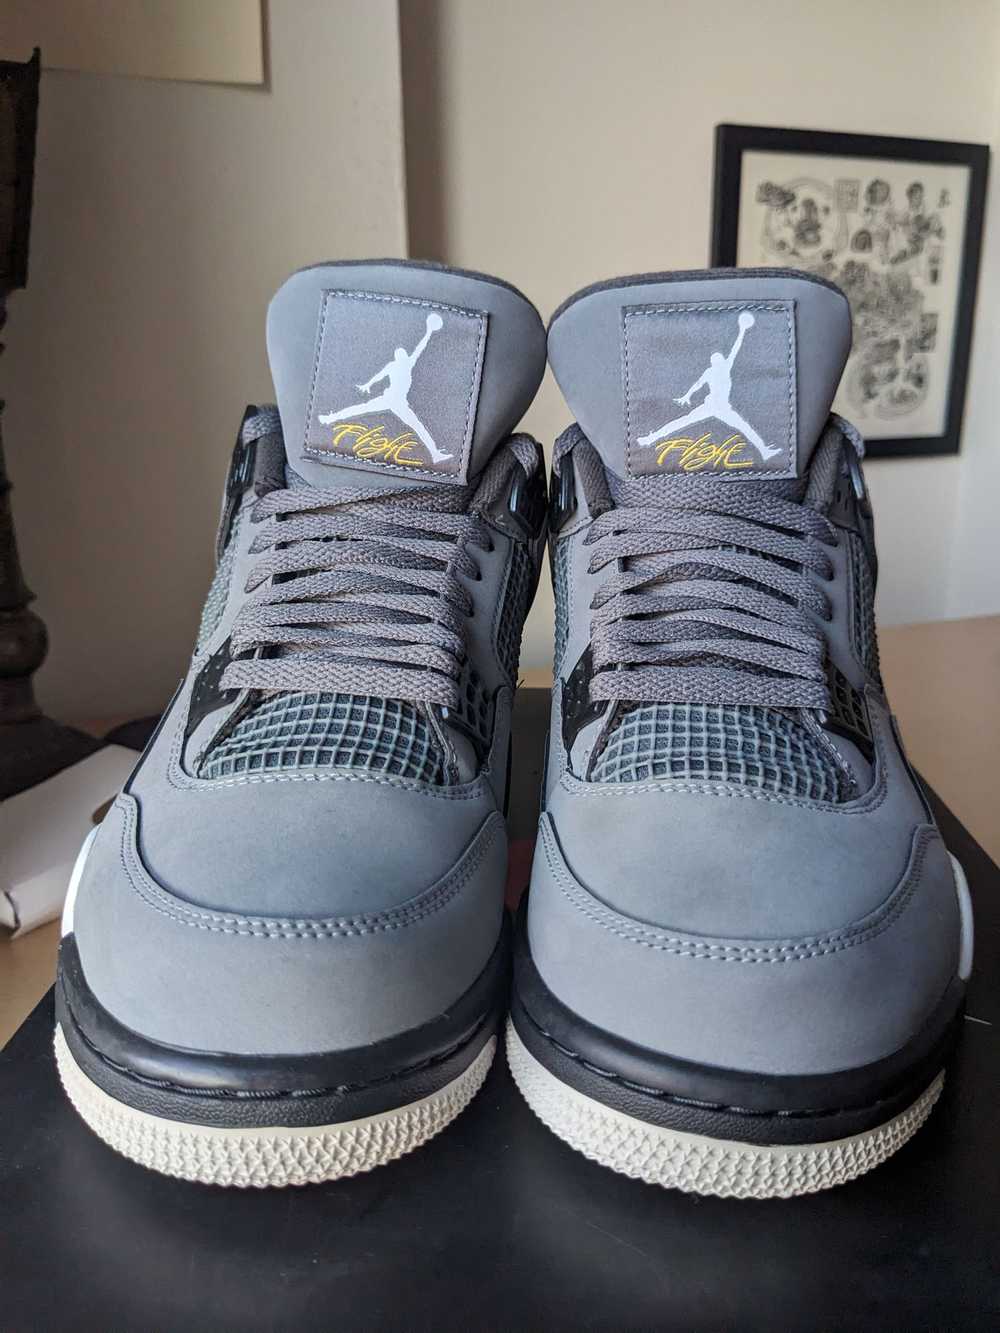 Jordan Brand Air Jordan 4 Retro 'Cool Grey' 2019 - image 10